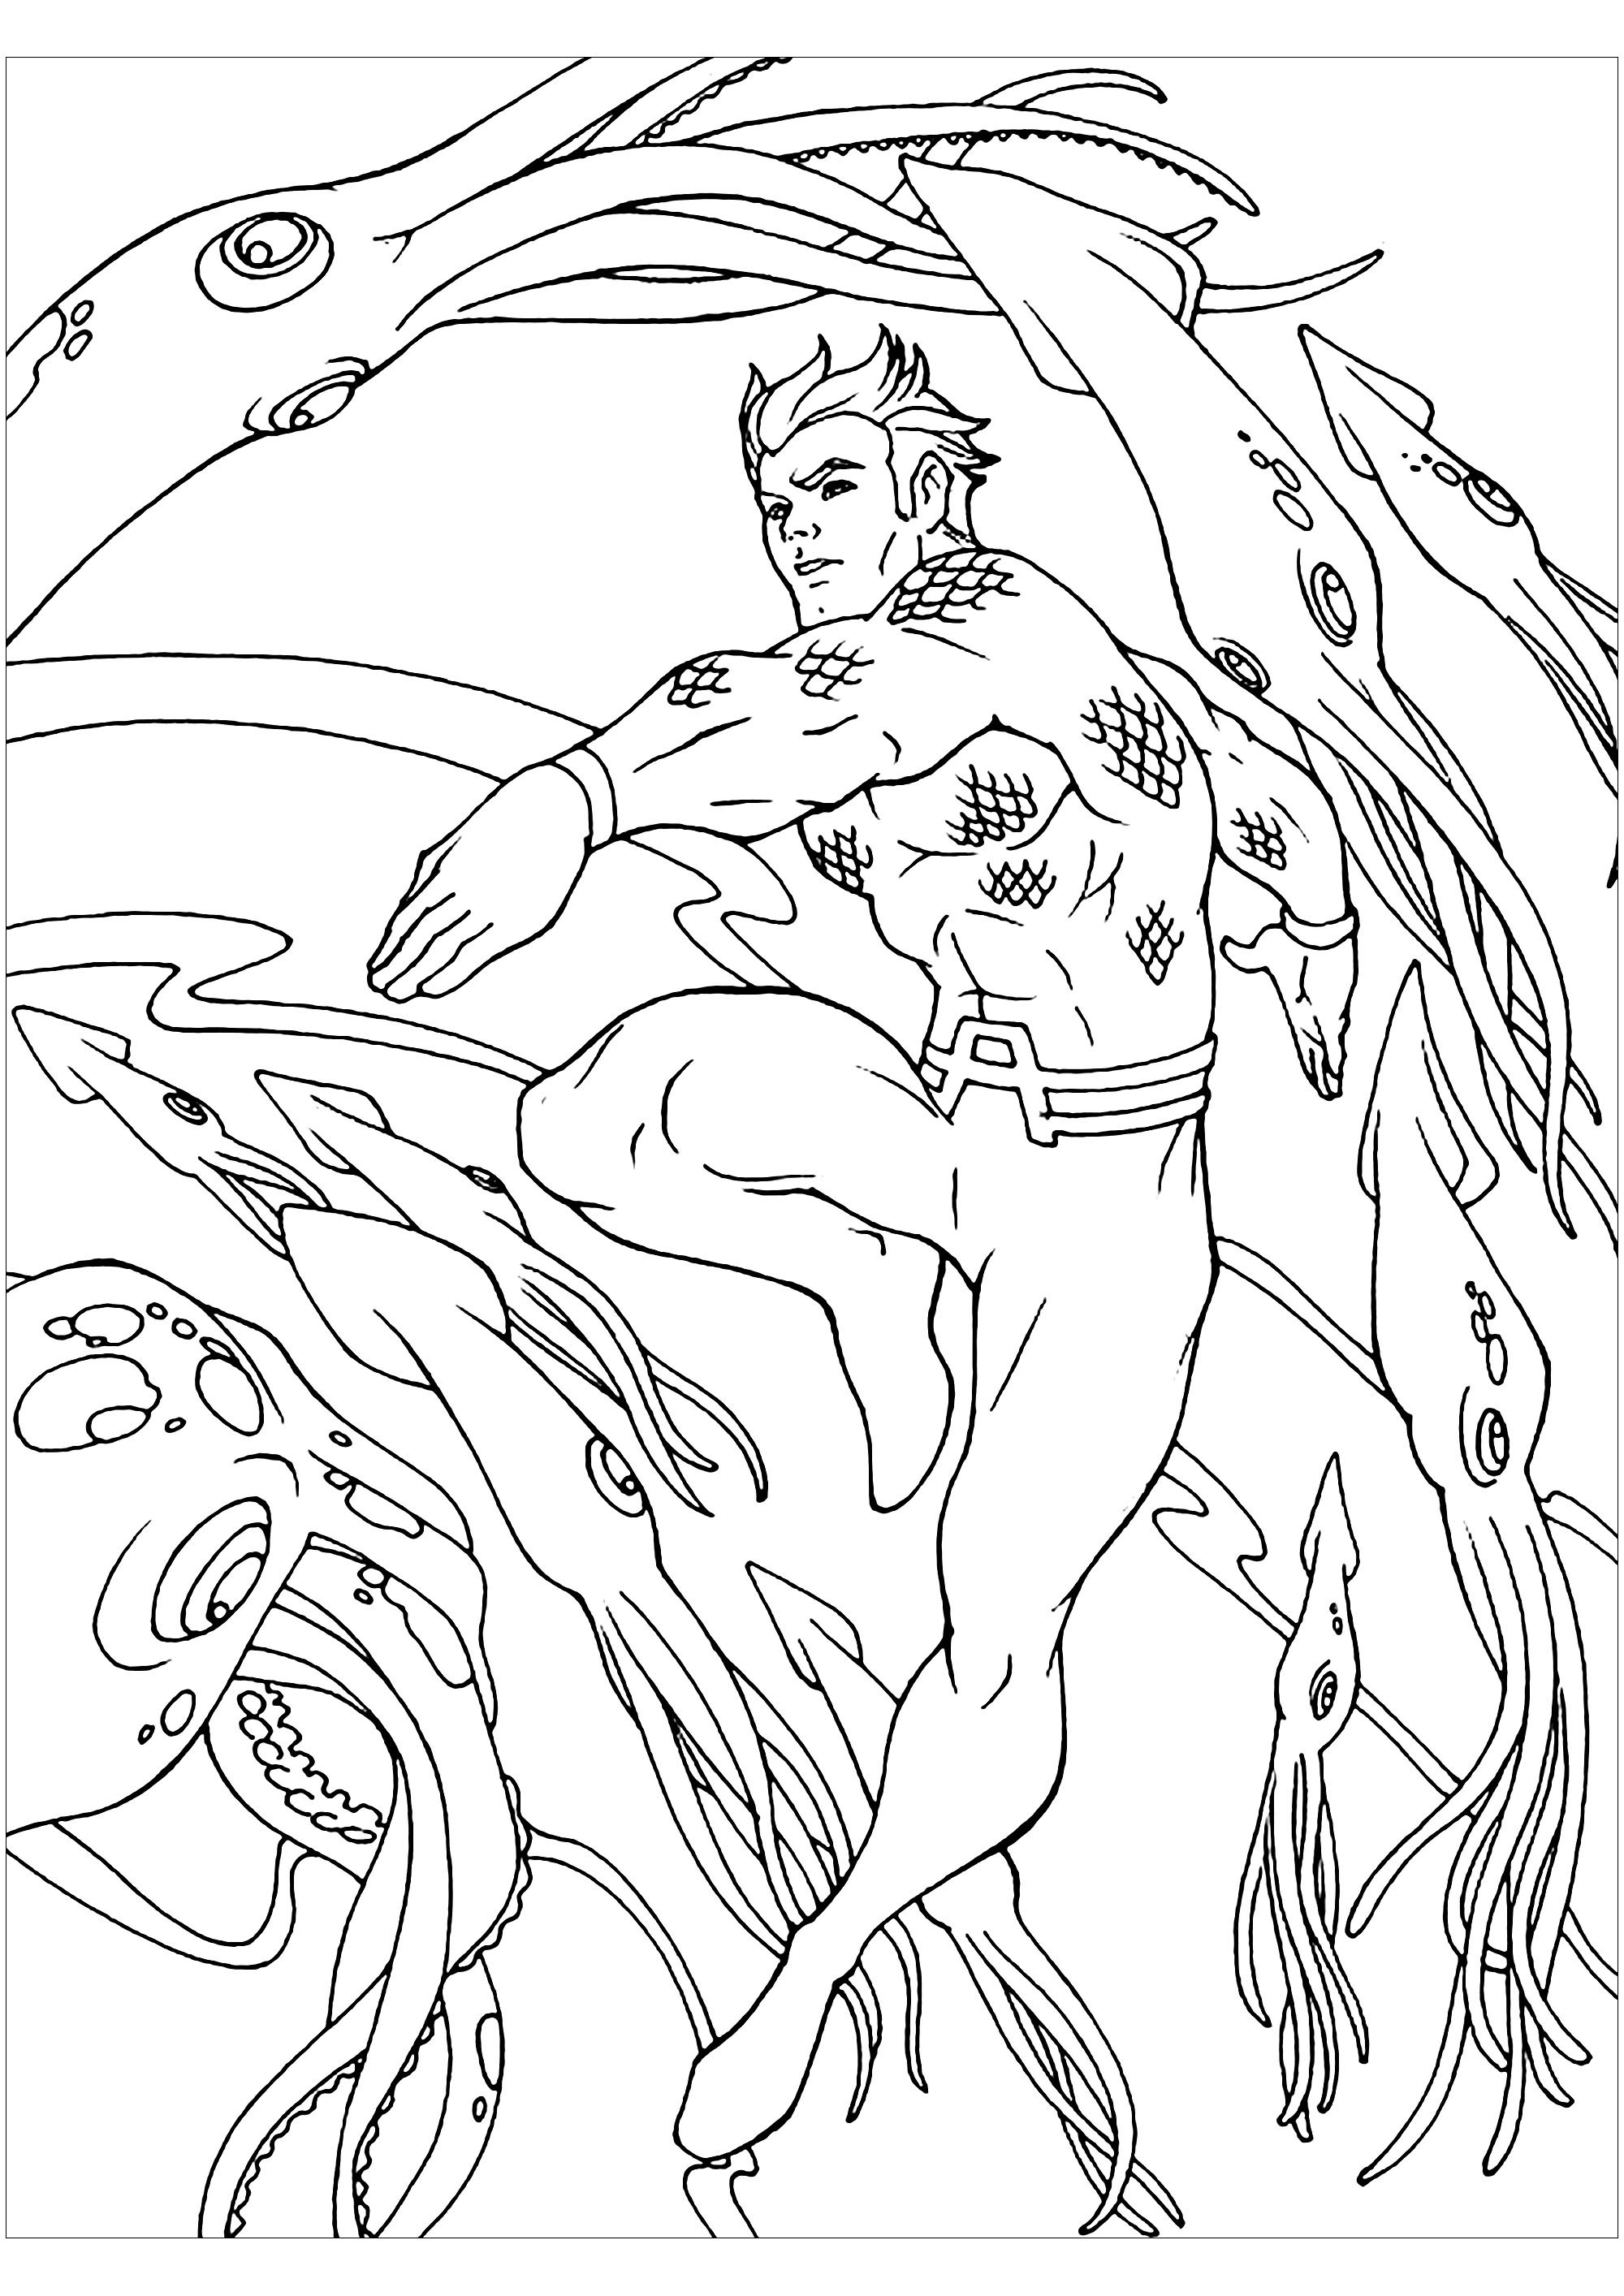 Desenho Aquaman para descarregar e imprimir para crianças